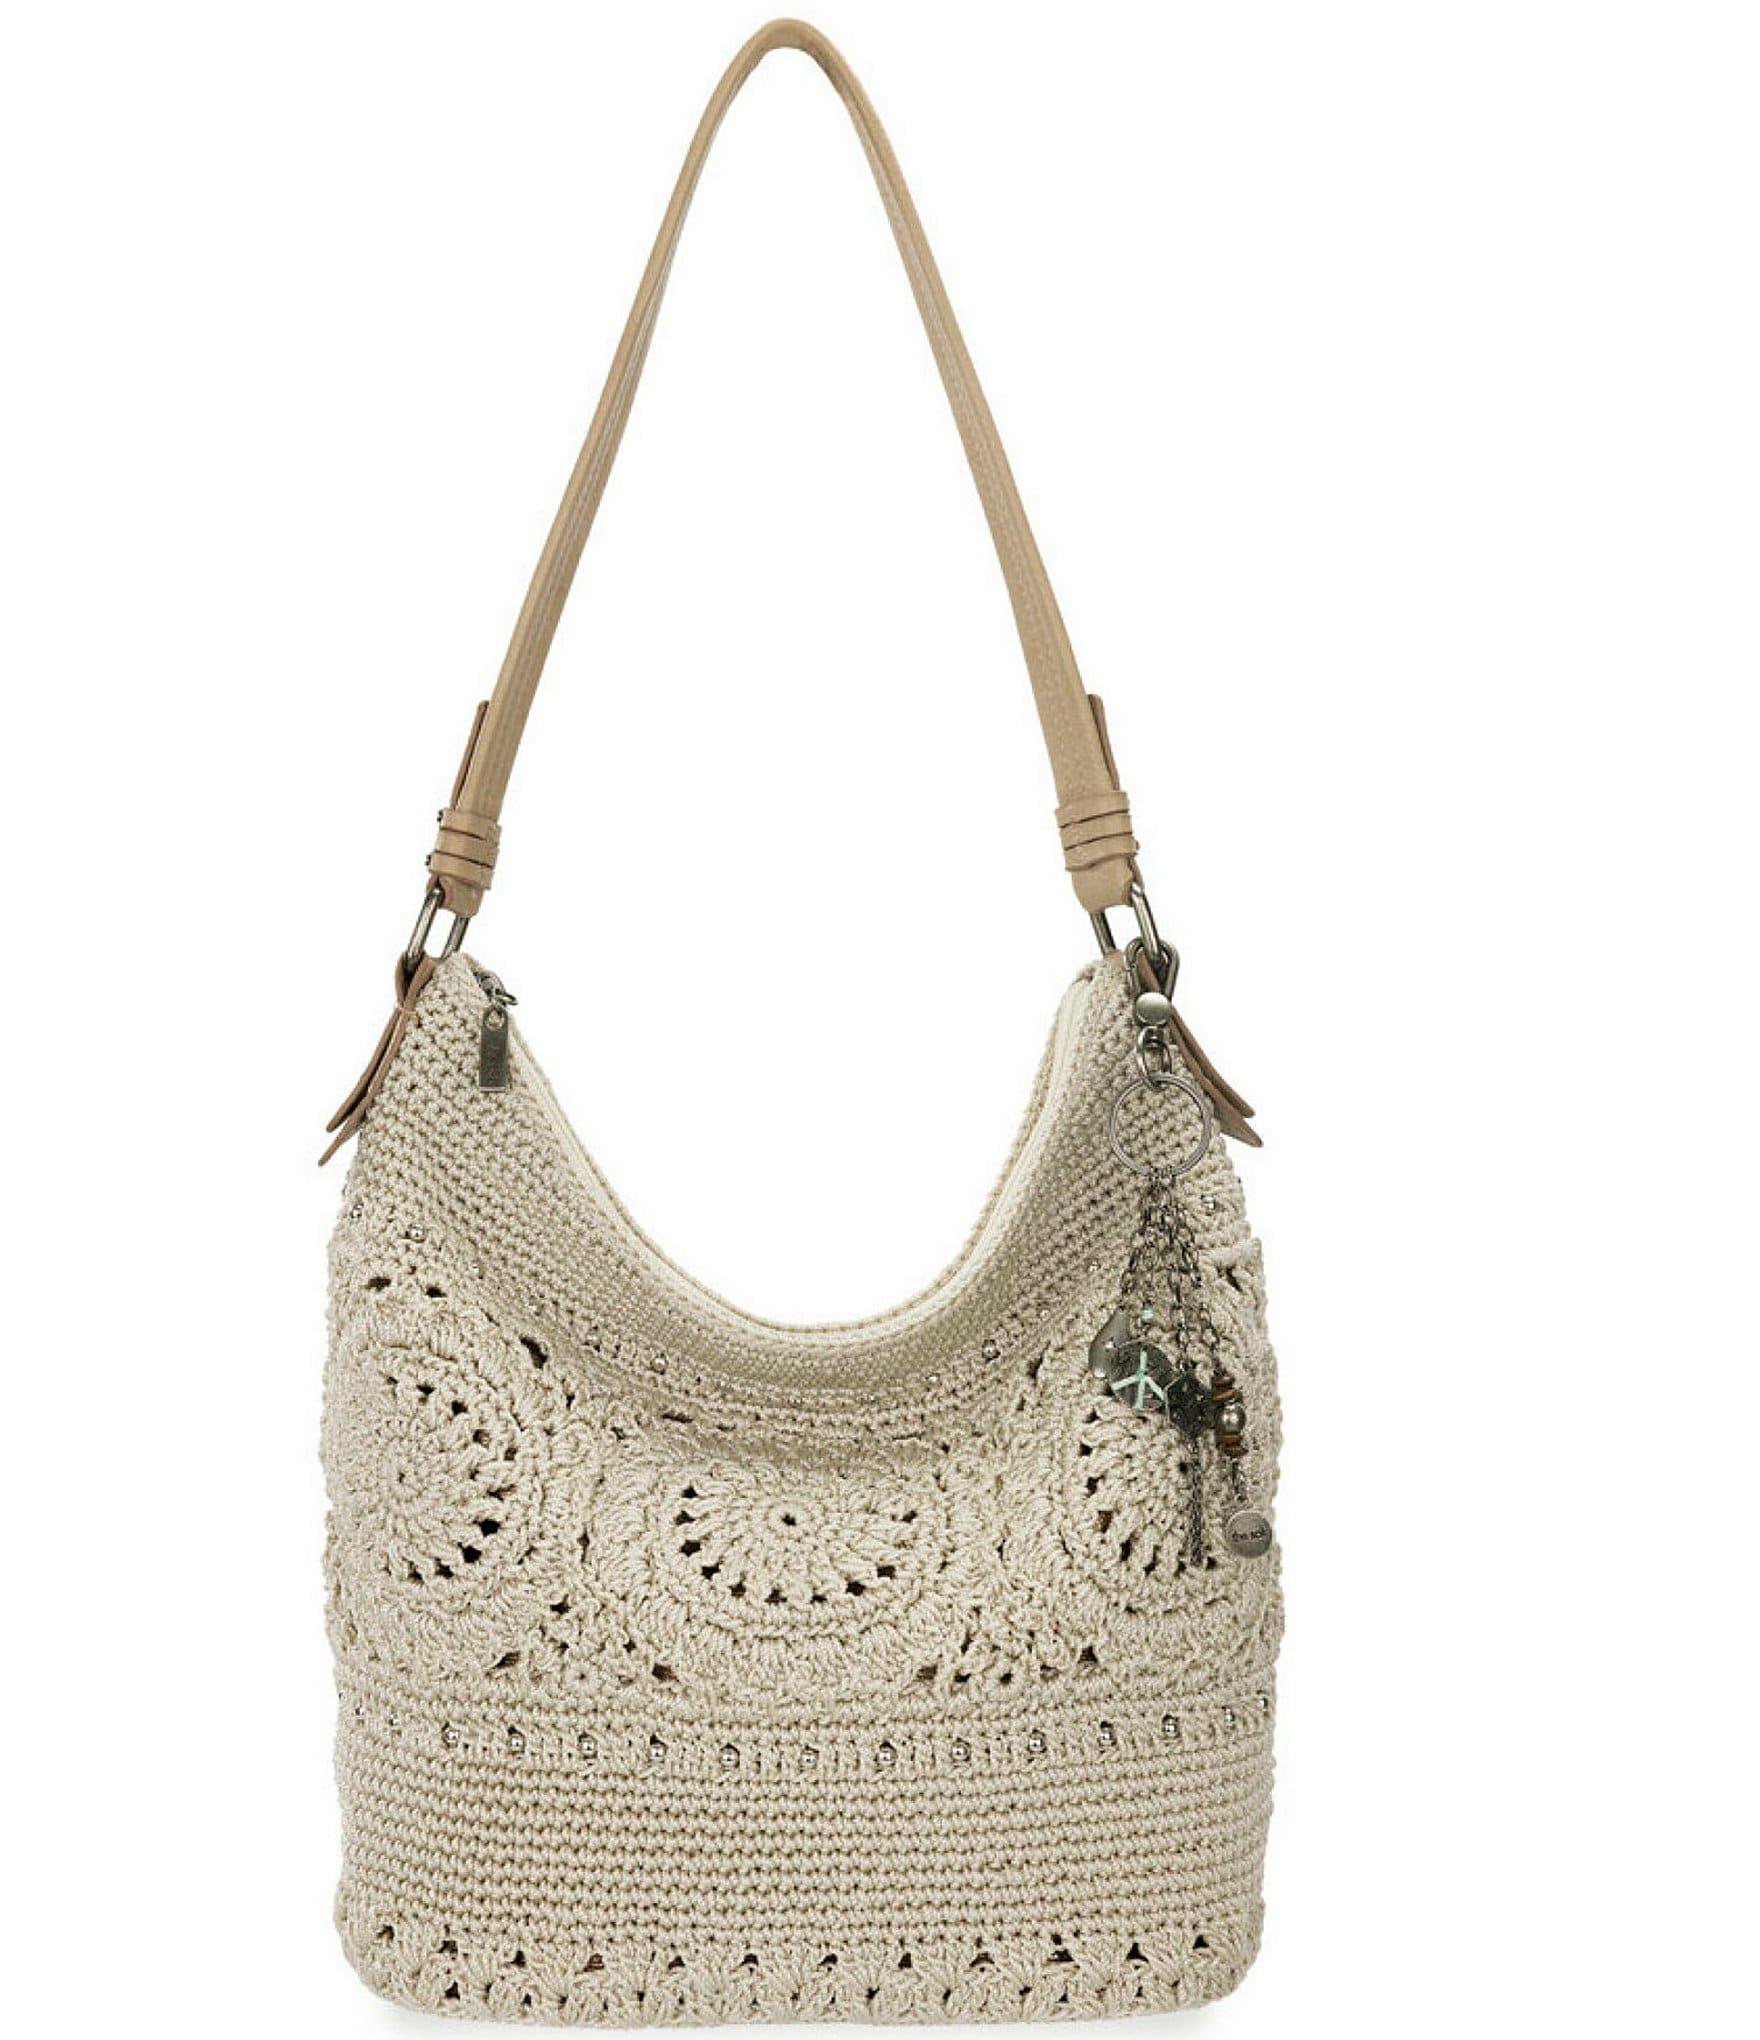 The Sak 120 Hobo Bag in Crochet, Large Purse with Single Shoulder Strap |  eBay